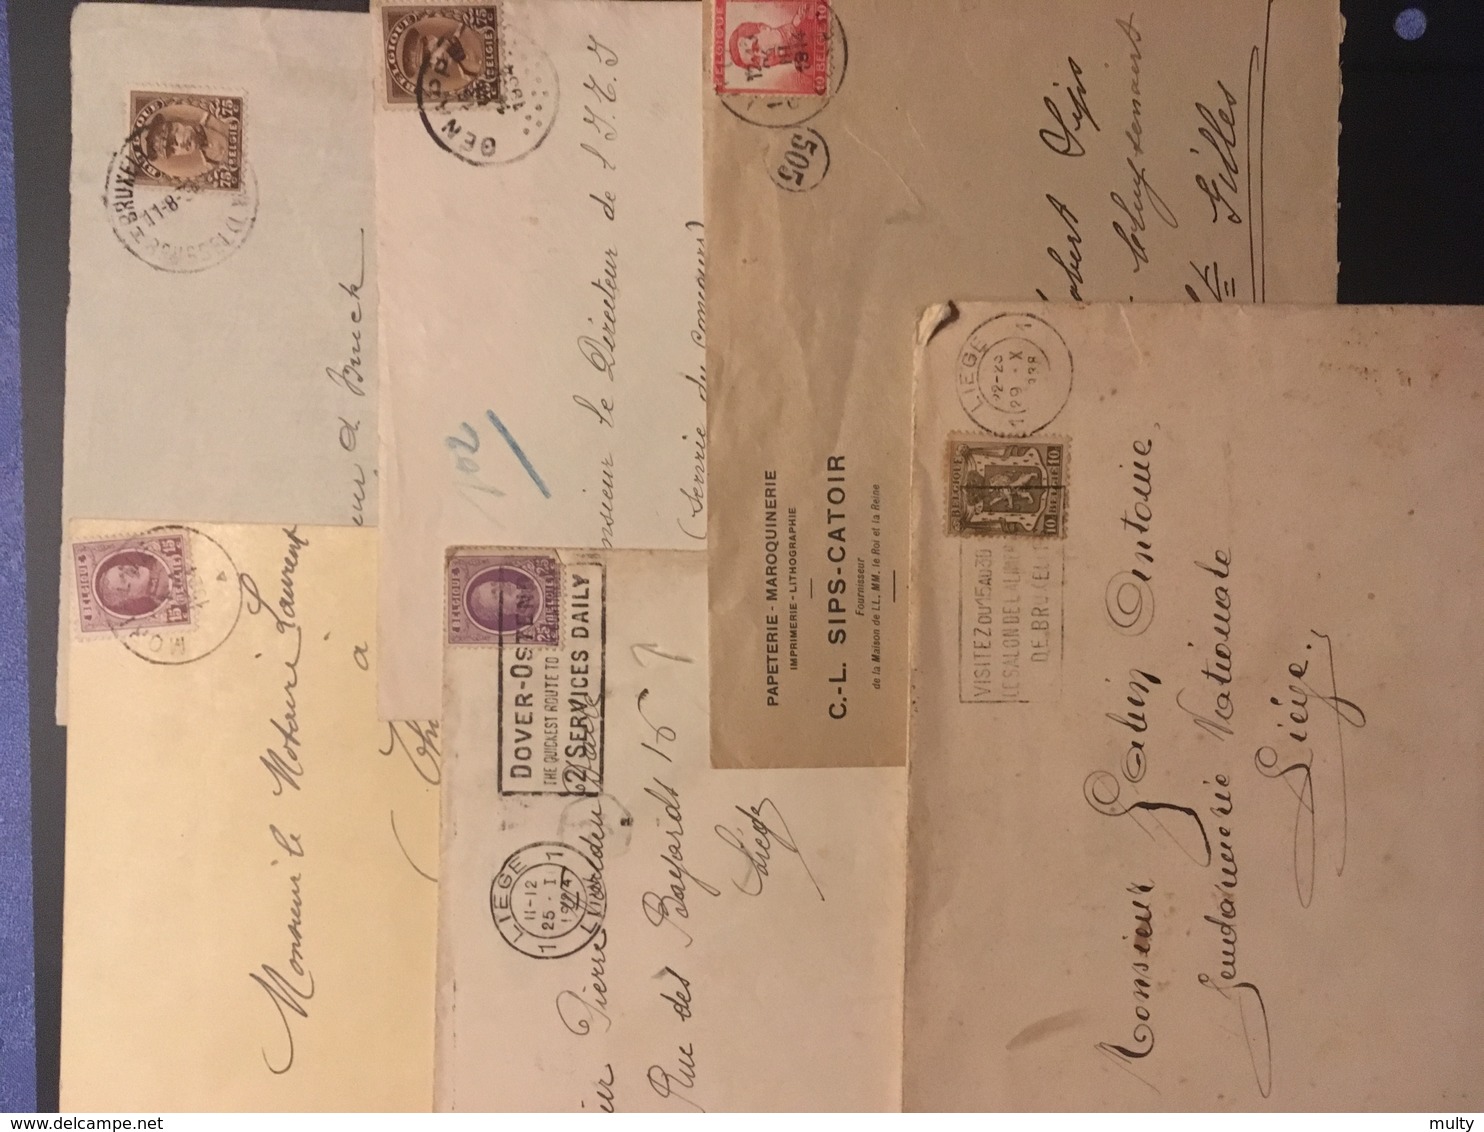 Opruiming / Liquidation Belgische briefomslagen, Lettres Belge / Militaire post, gelegenheidsstempels ..... + 3 kg.